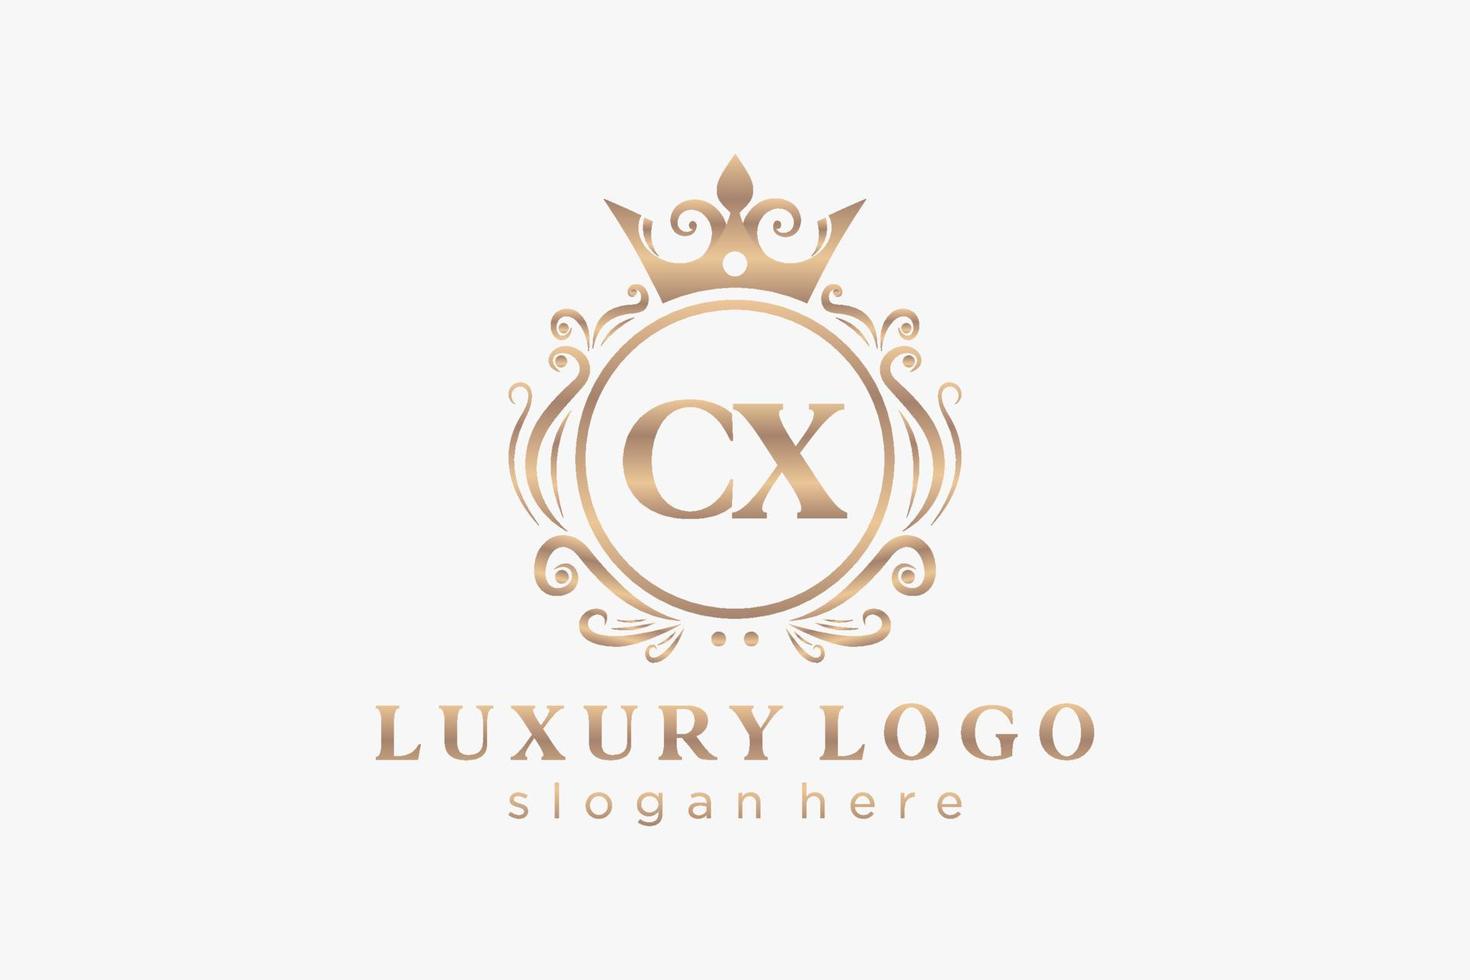 Royal Luxury Logo-Vorlage mit anfänglichem cx-Buchstaben in Vektorgrafiken für Restaurant, Lizenzgebühren, Boutique, Café, Hotel, Heraldik, Schmuck, Mode und andere Vektorillustrationen. vektor